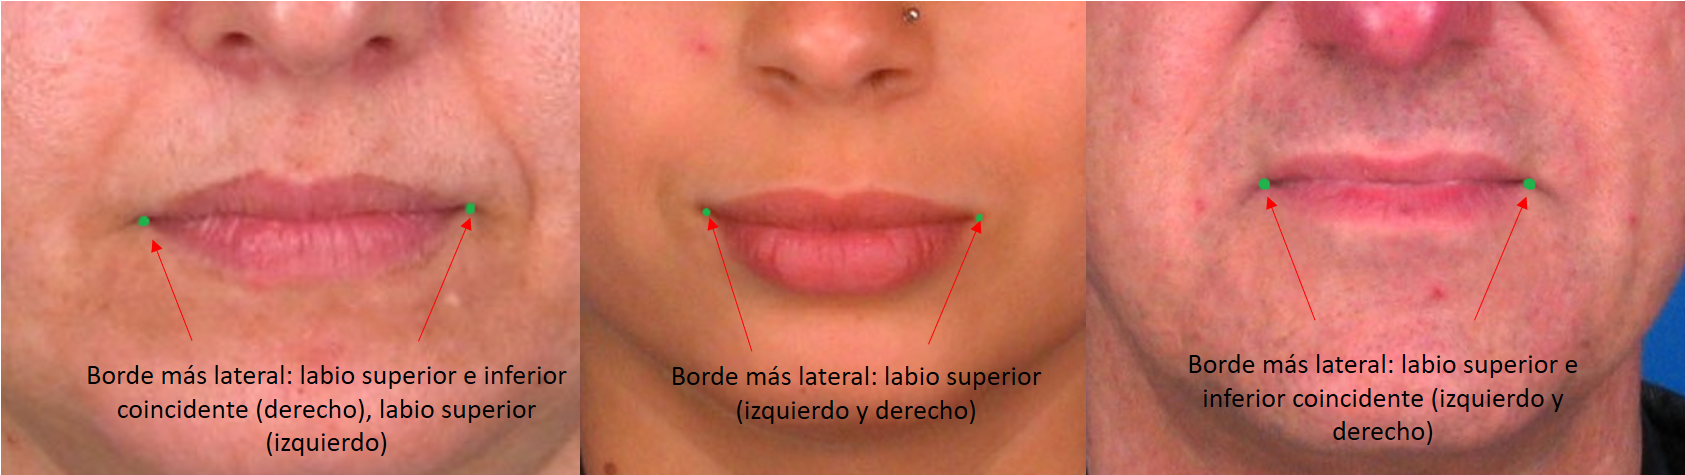 Ejemplos de distintos puntos de unión del labio superior e inferior en la rima oris